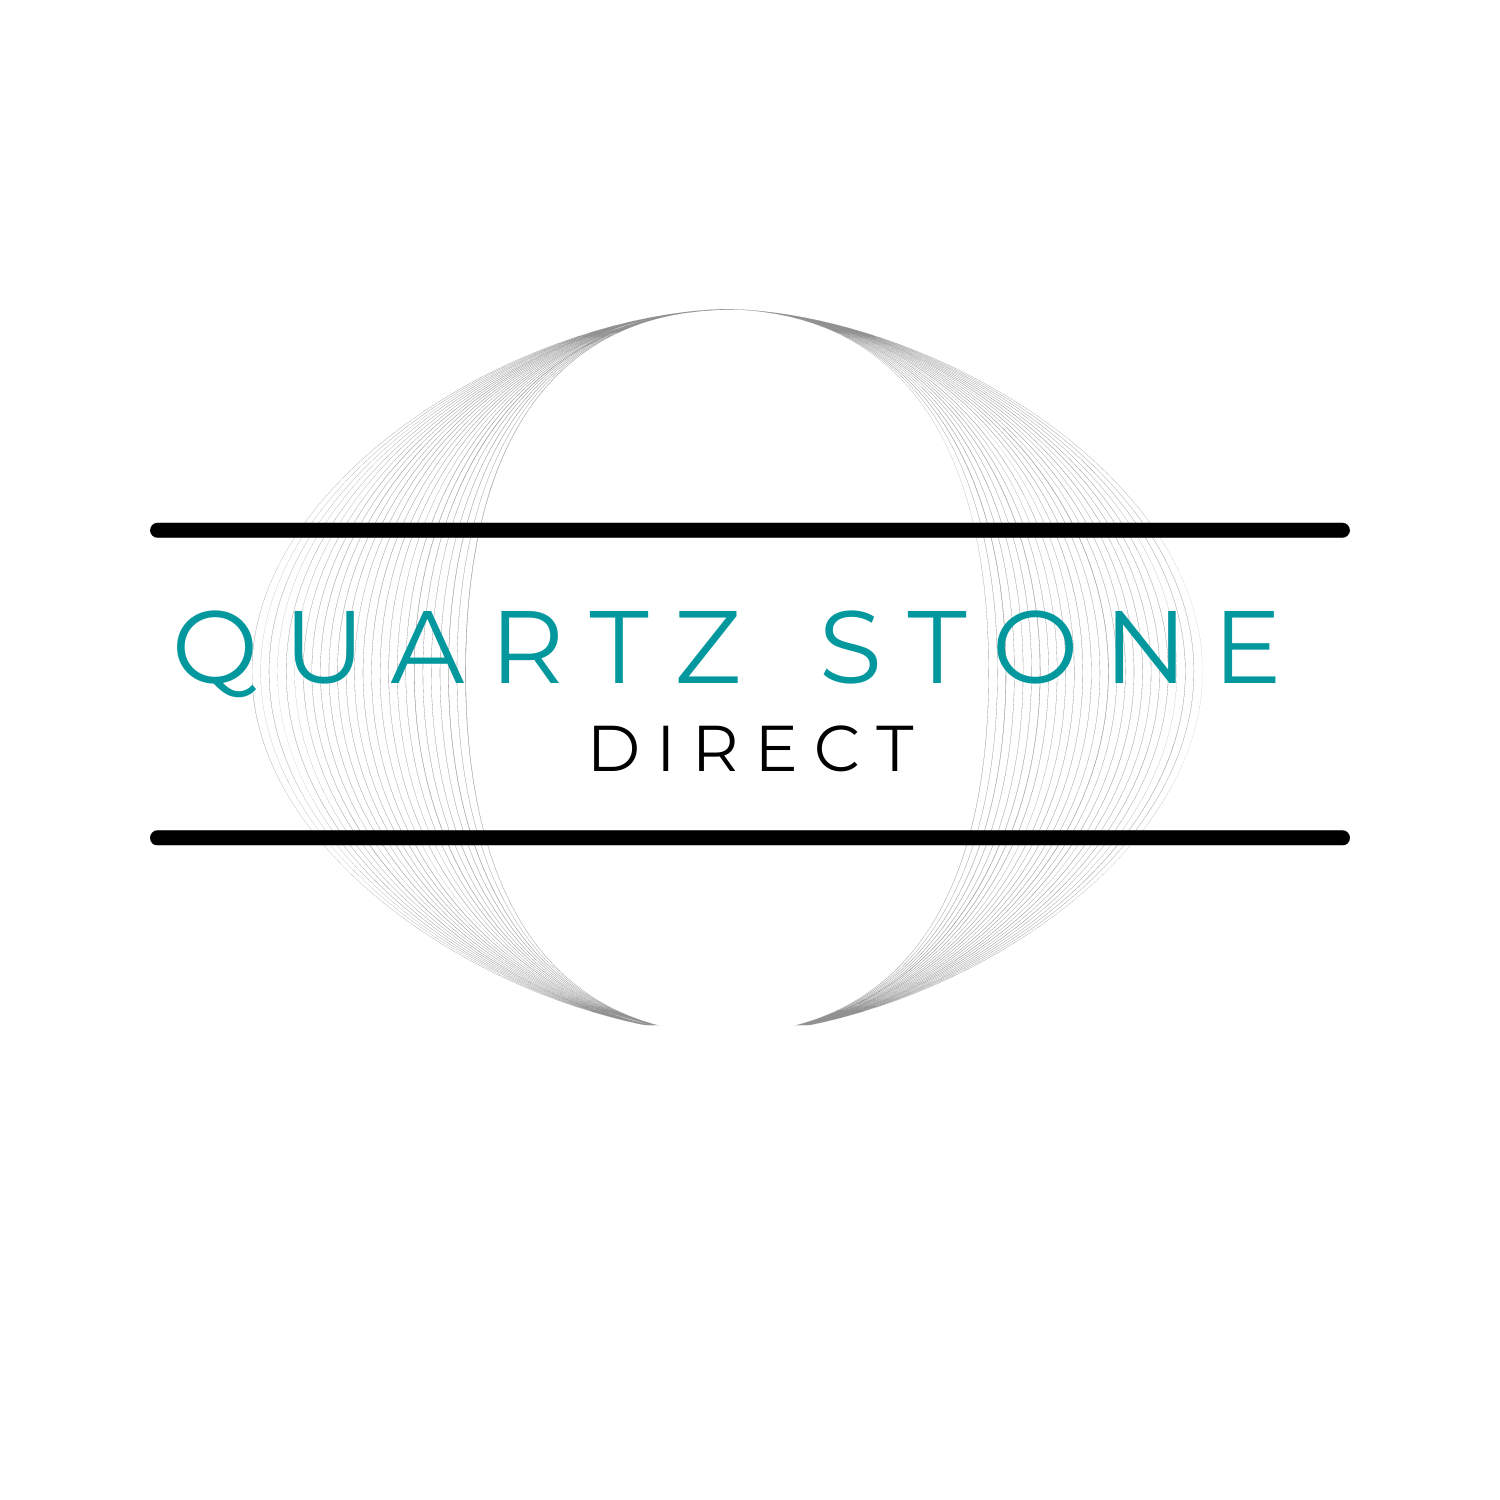 (c) Quartzstonedirect.com